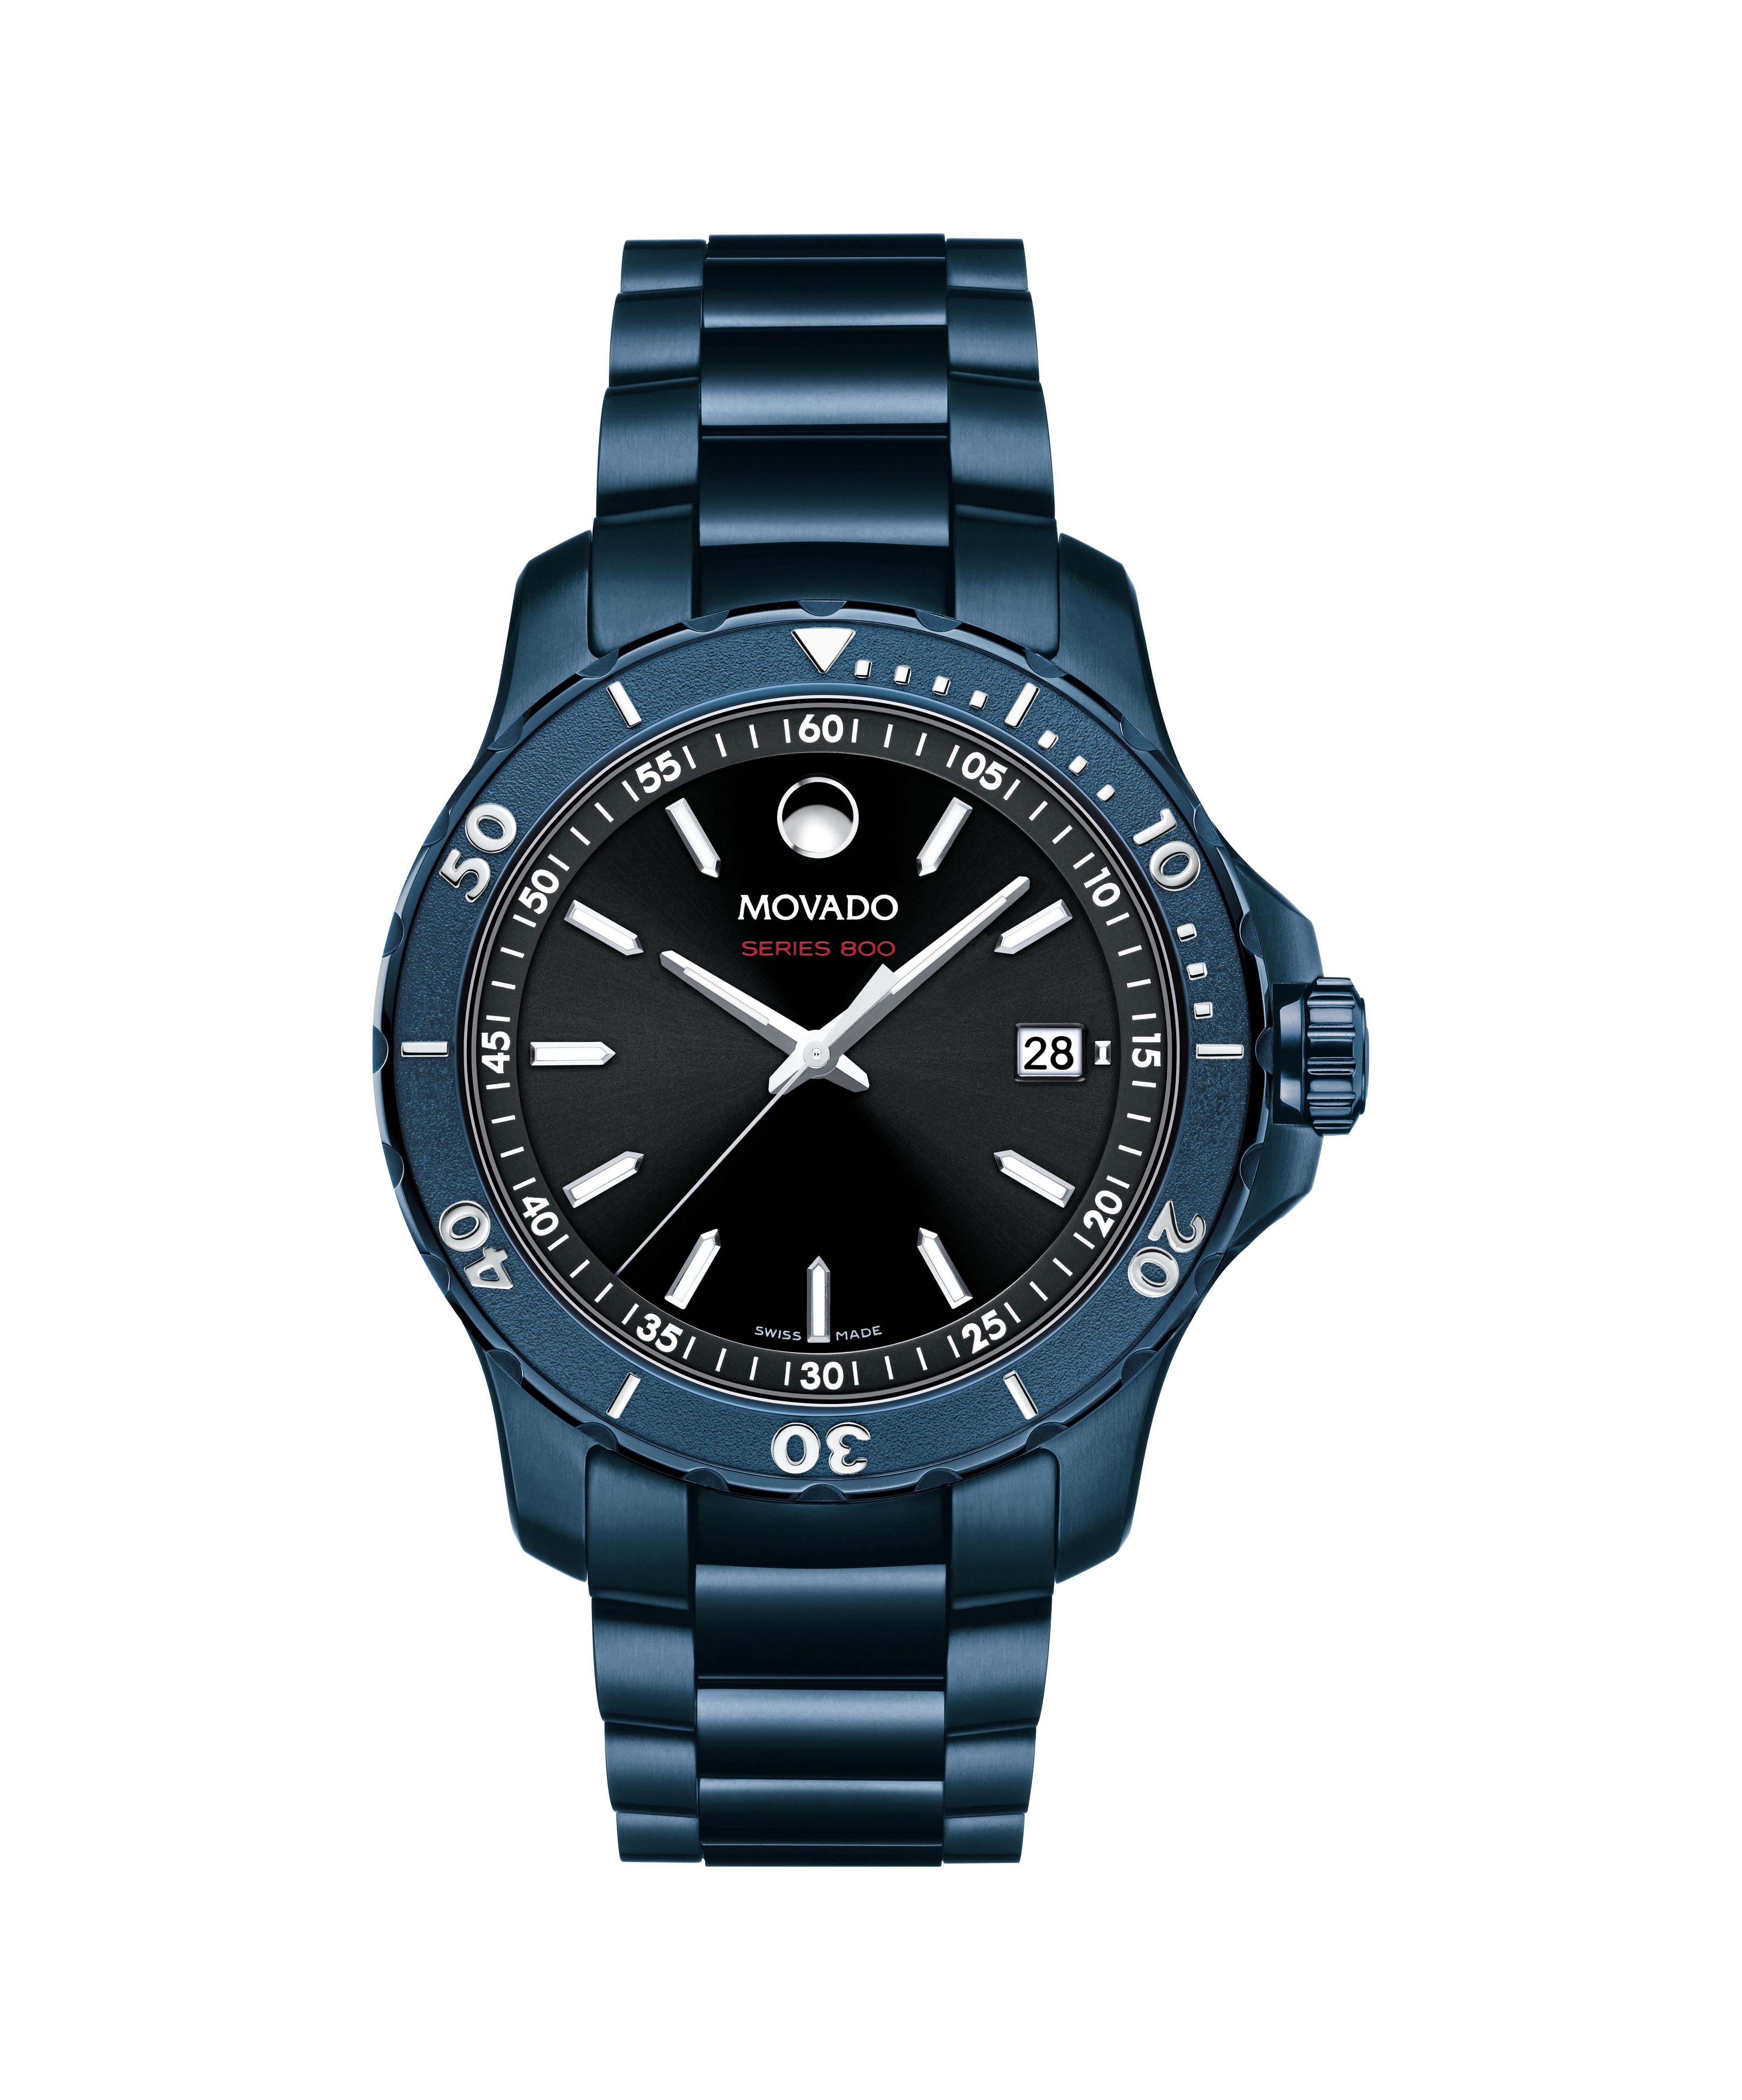 Photos - Wrist Watch Movado Core Series 800  Company Store 